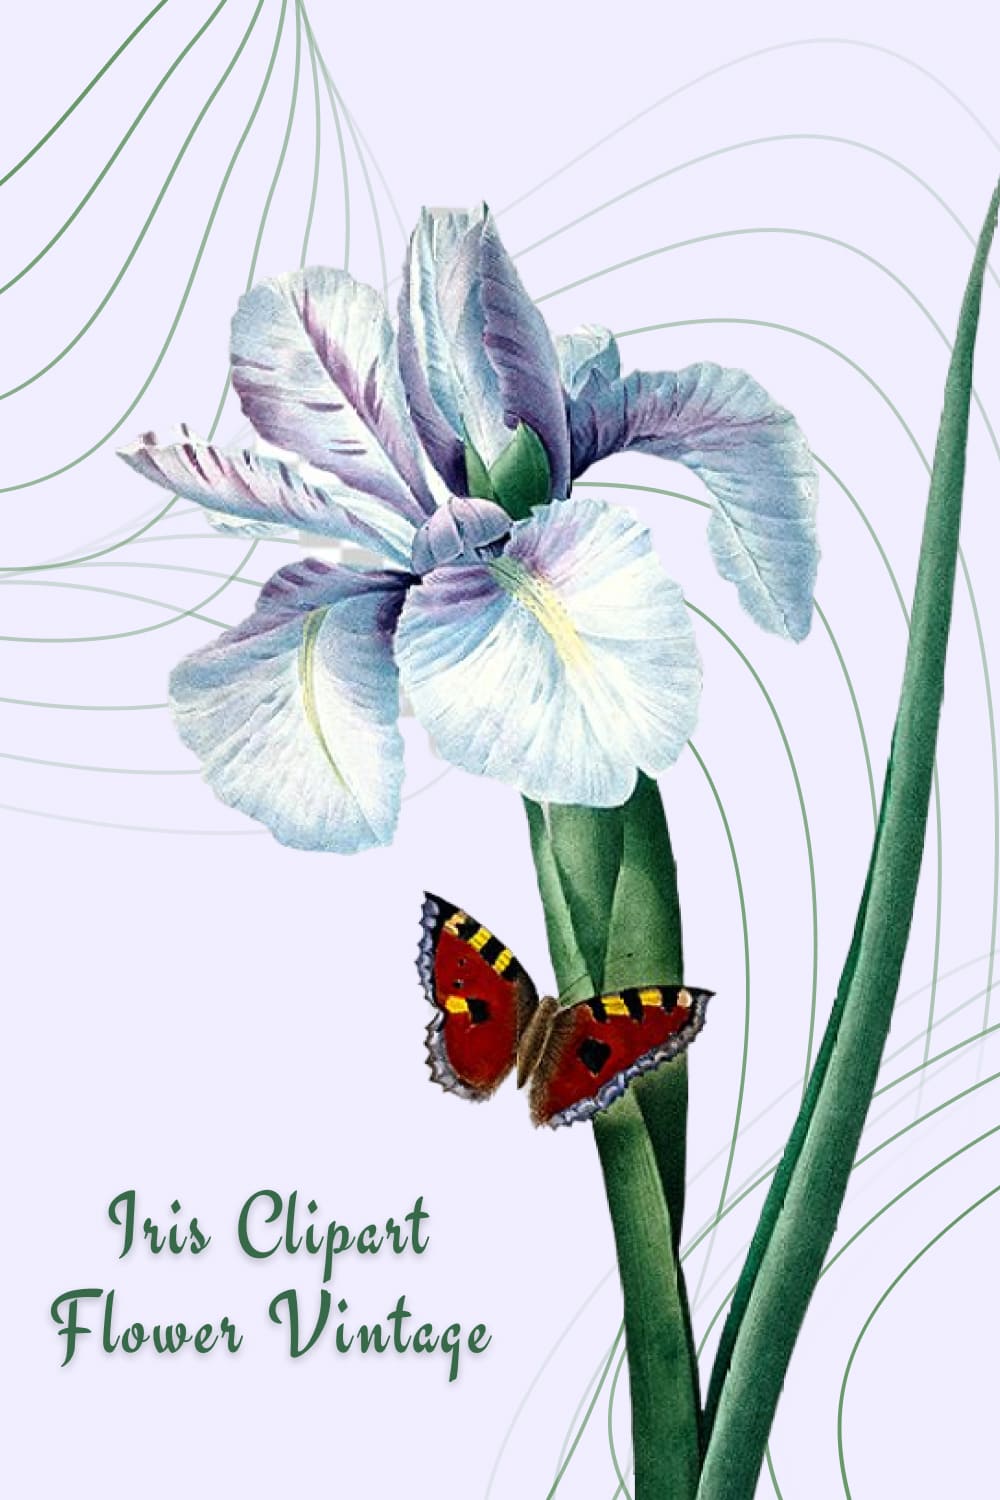 Iris Clipart Flower Vintage Watercolor Design pinterest image.